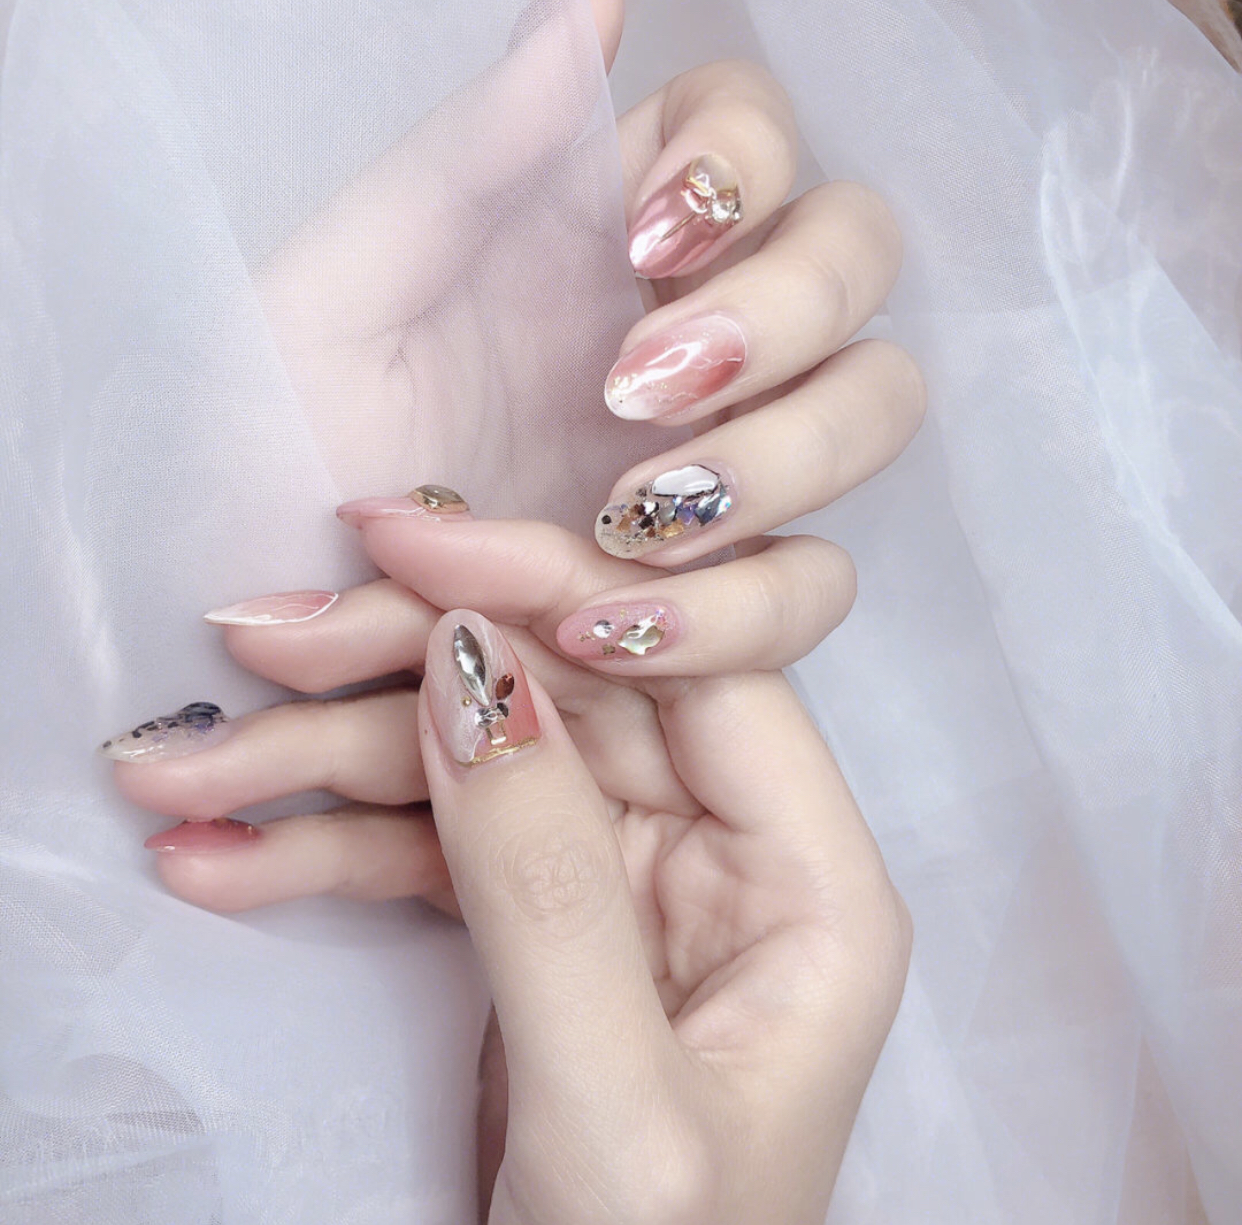 小仙女们超爱的仙女风美甲,拥有神仙颜的指尖也太美了吧!